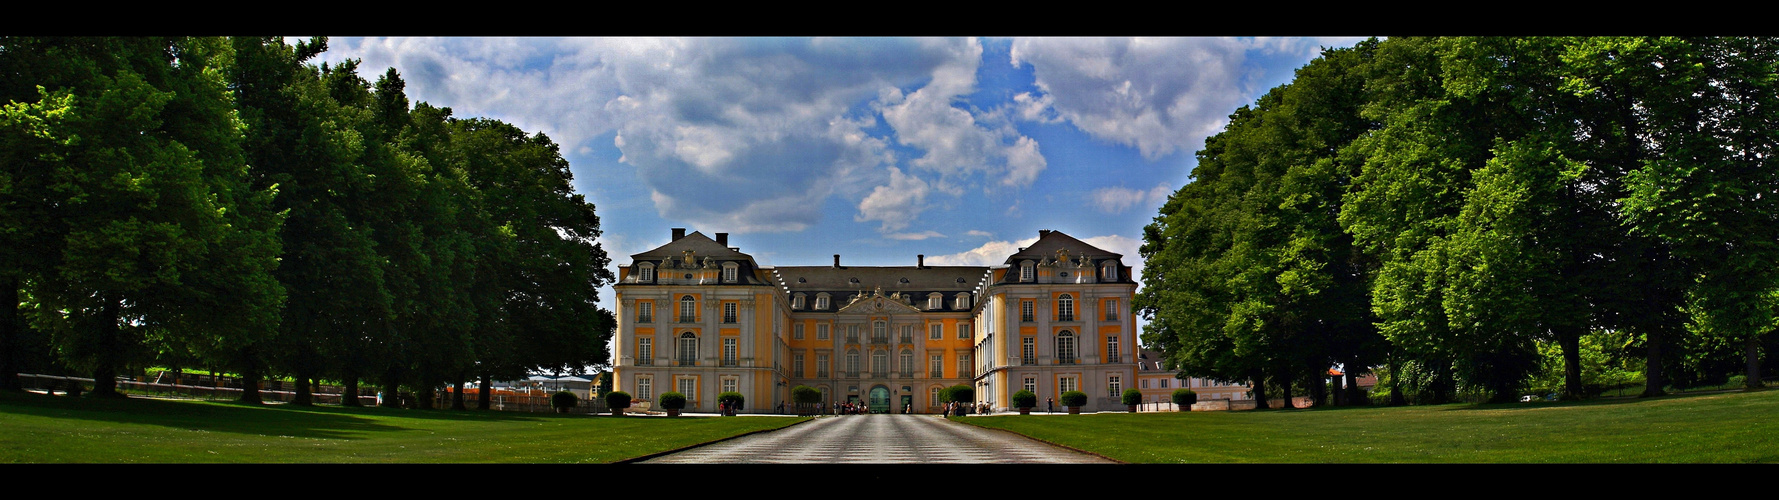 Schloss Augustusburg - Brühl